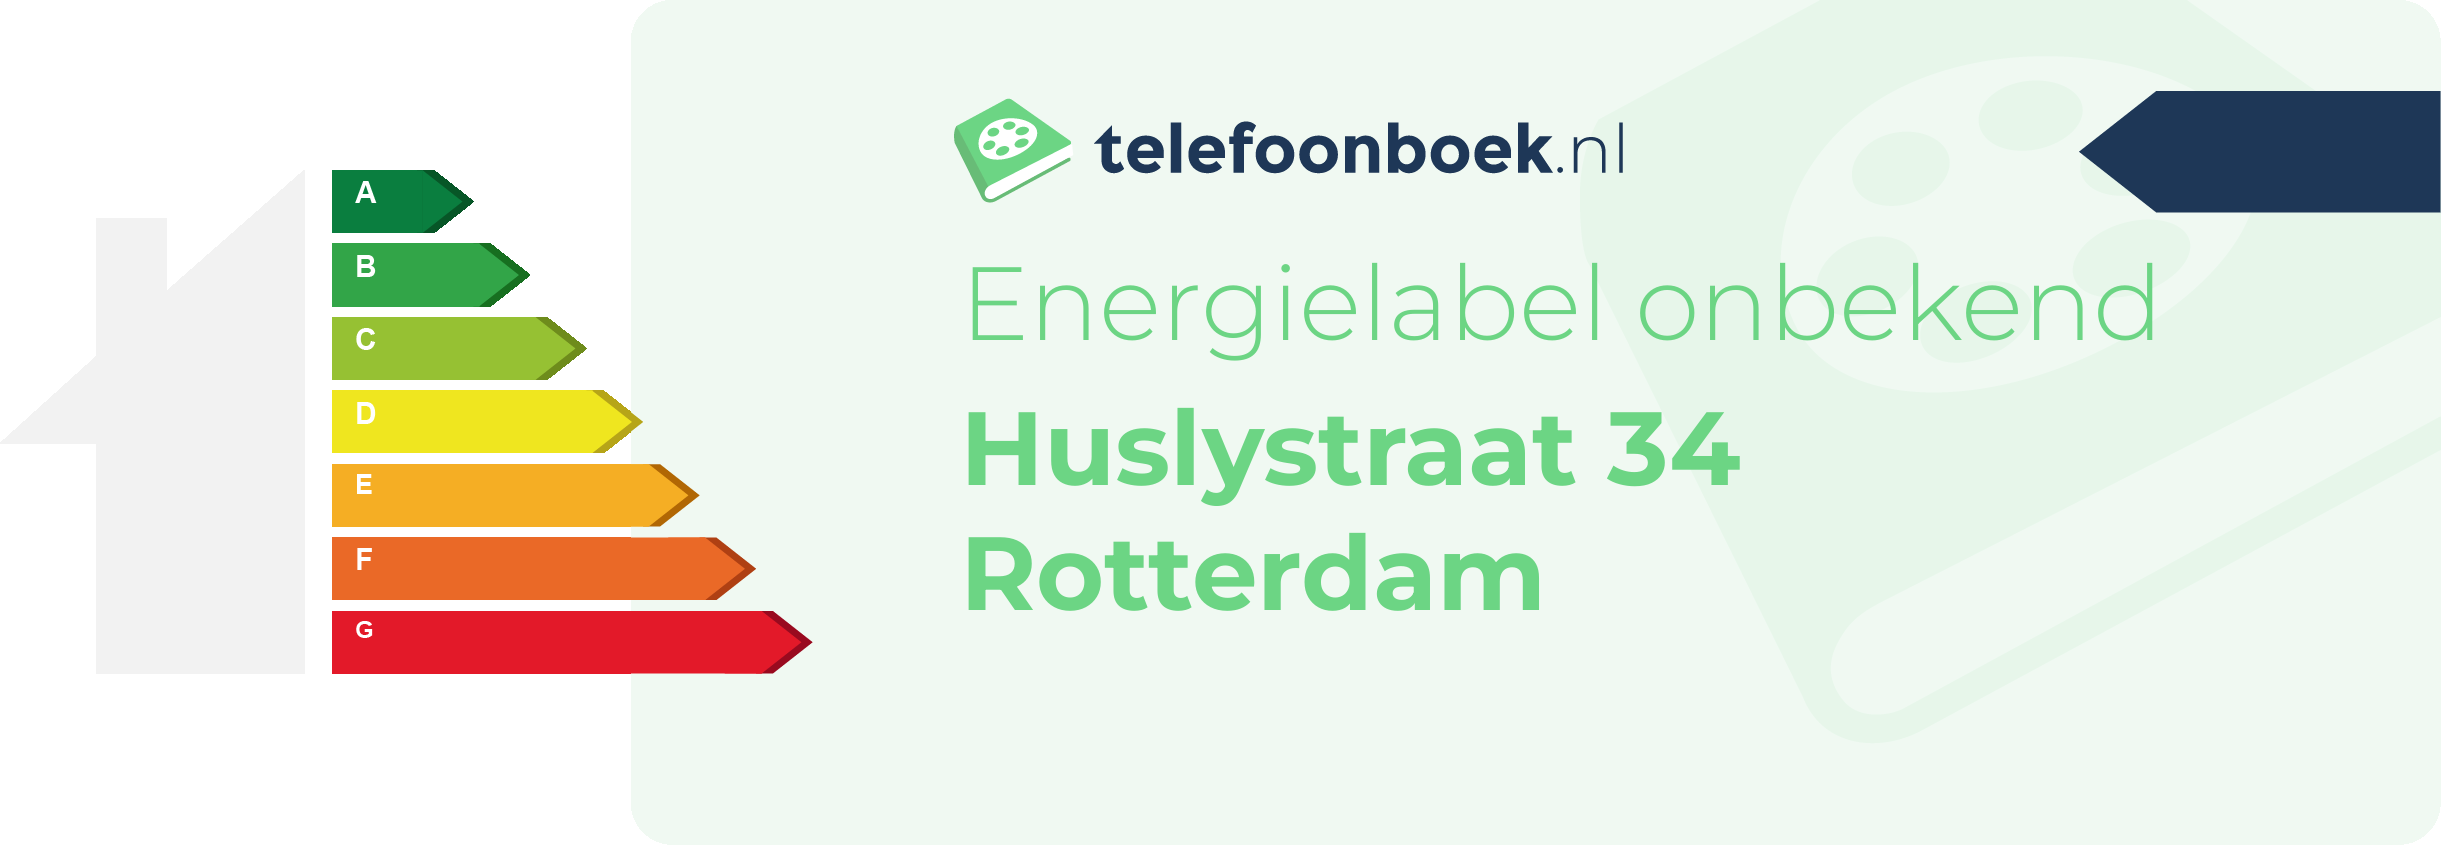 Energielabel Huslystraat 34 Rotterdam